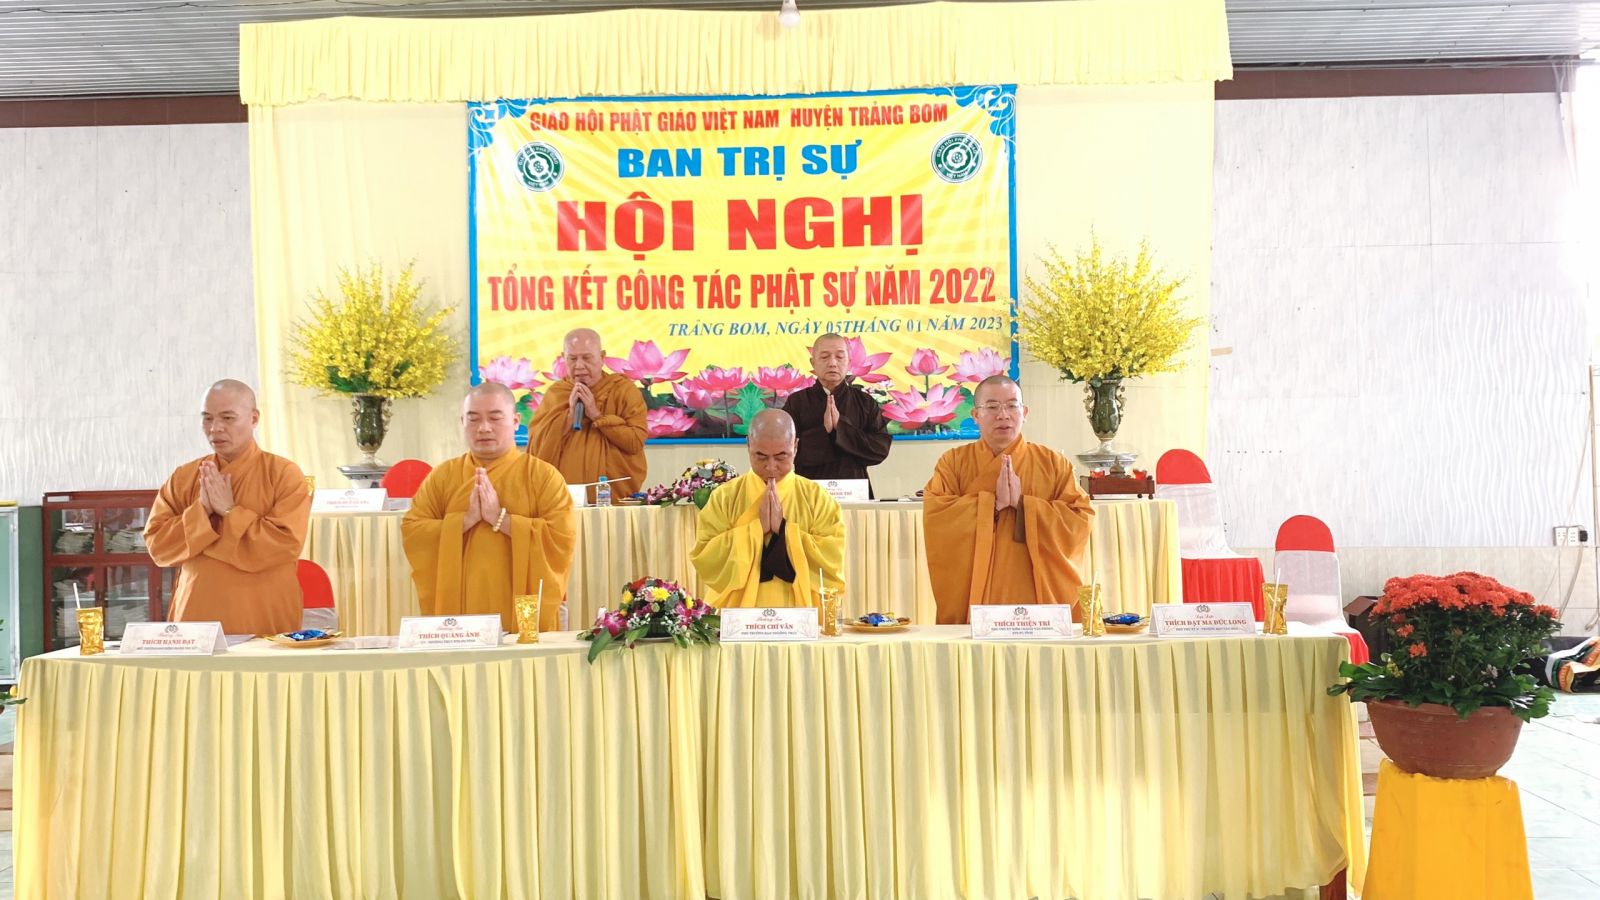 Đồng Nai: BTS GHPGVN huyện Trảng Bom – trang nghiêm tổ chức Hội nghị Tổng kết Công tác Phật sự năm 2022 và Phương hướng Hoạt động Phật